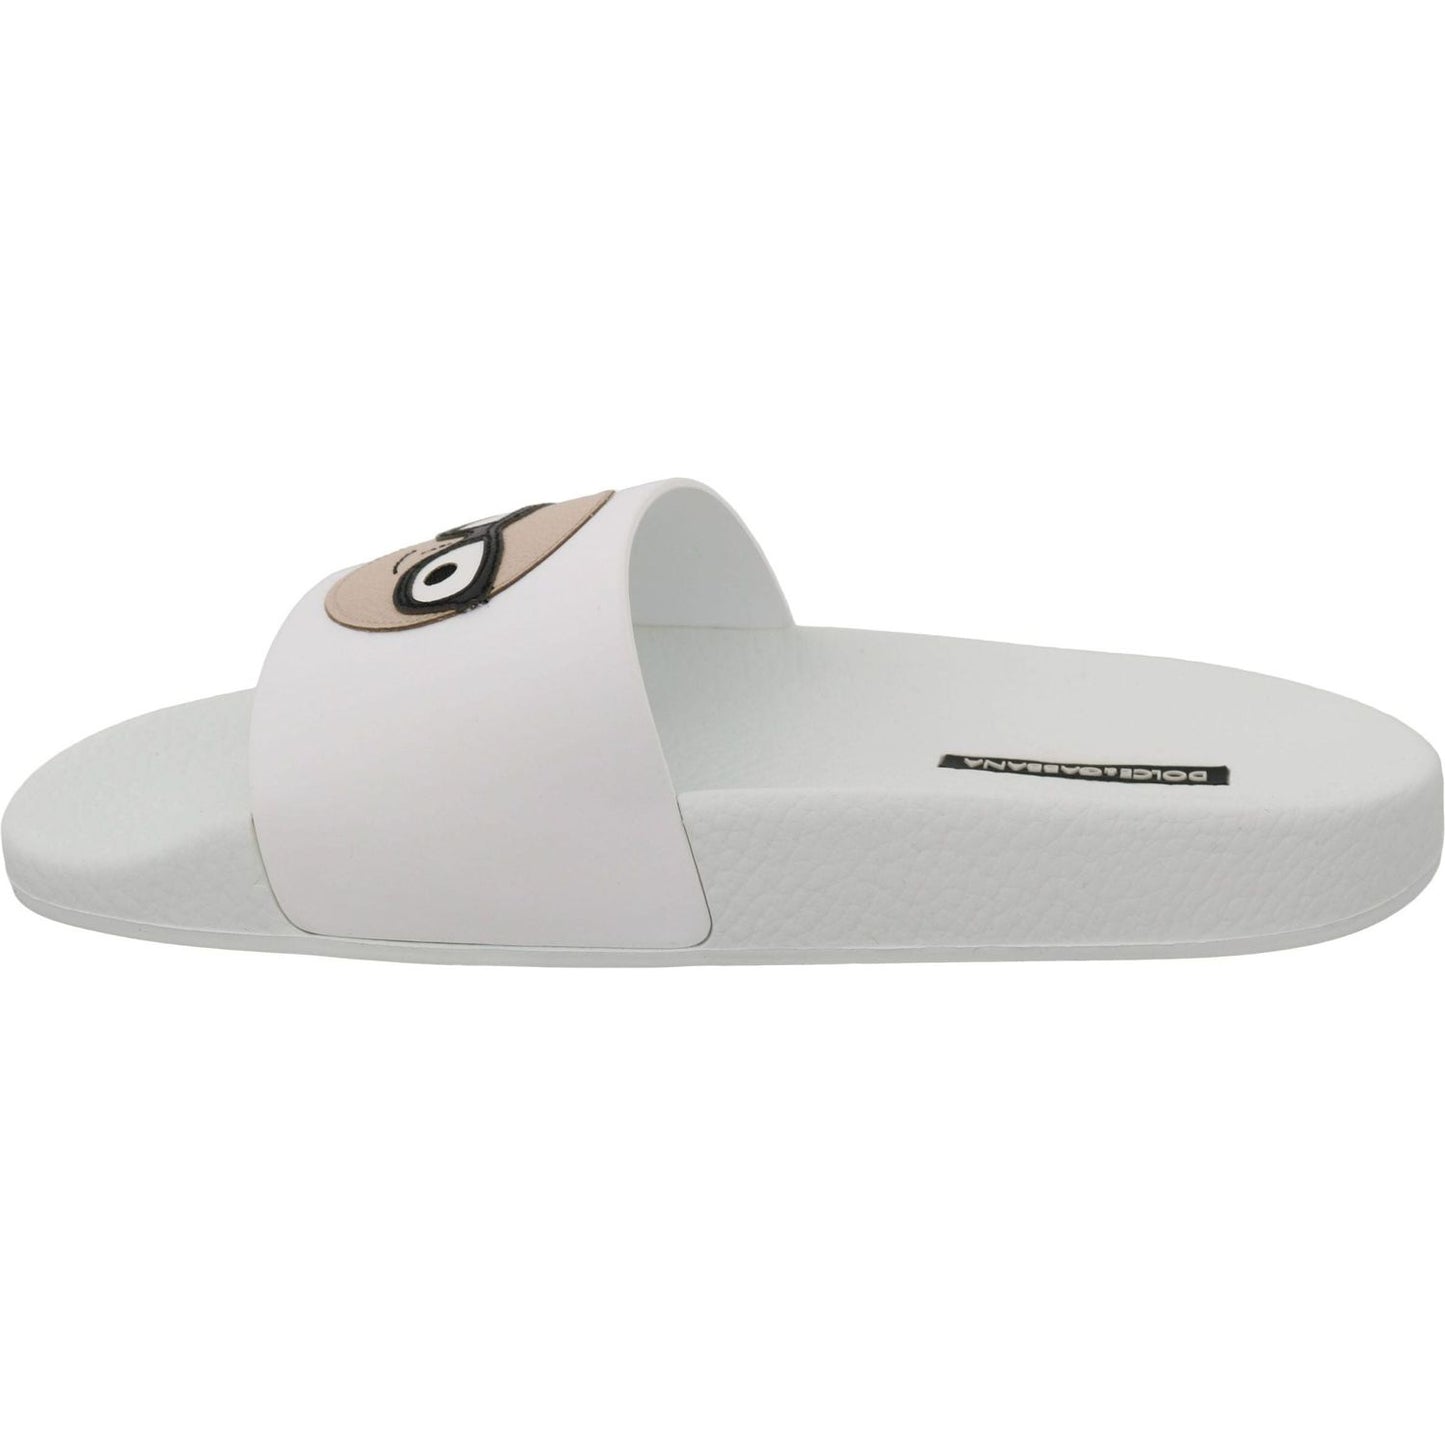 Dolce & GabbanaChic White Slide Sandals - Luxury Summer FootwearMcRichard Designer Brands£299.00